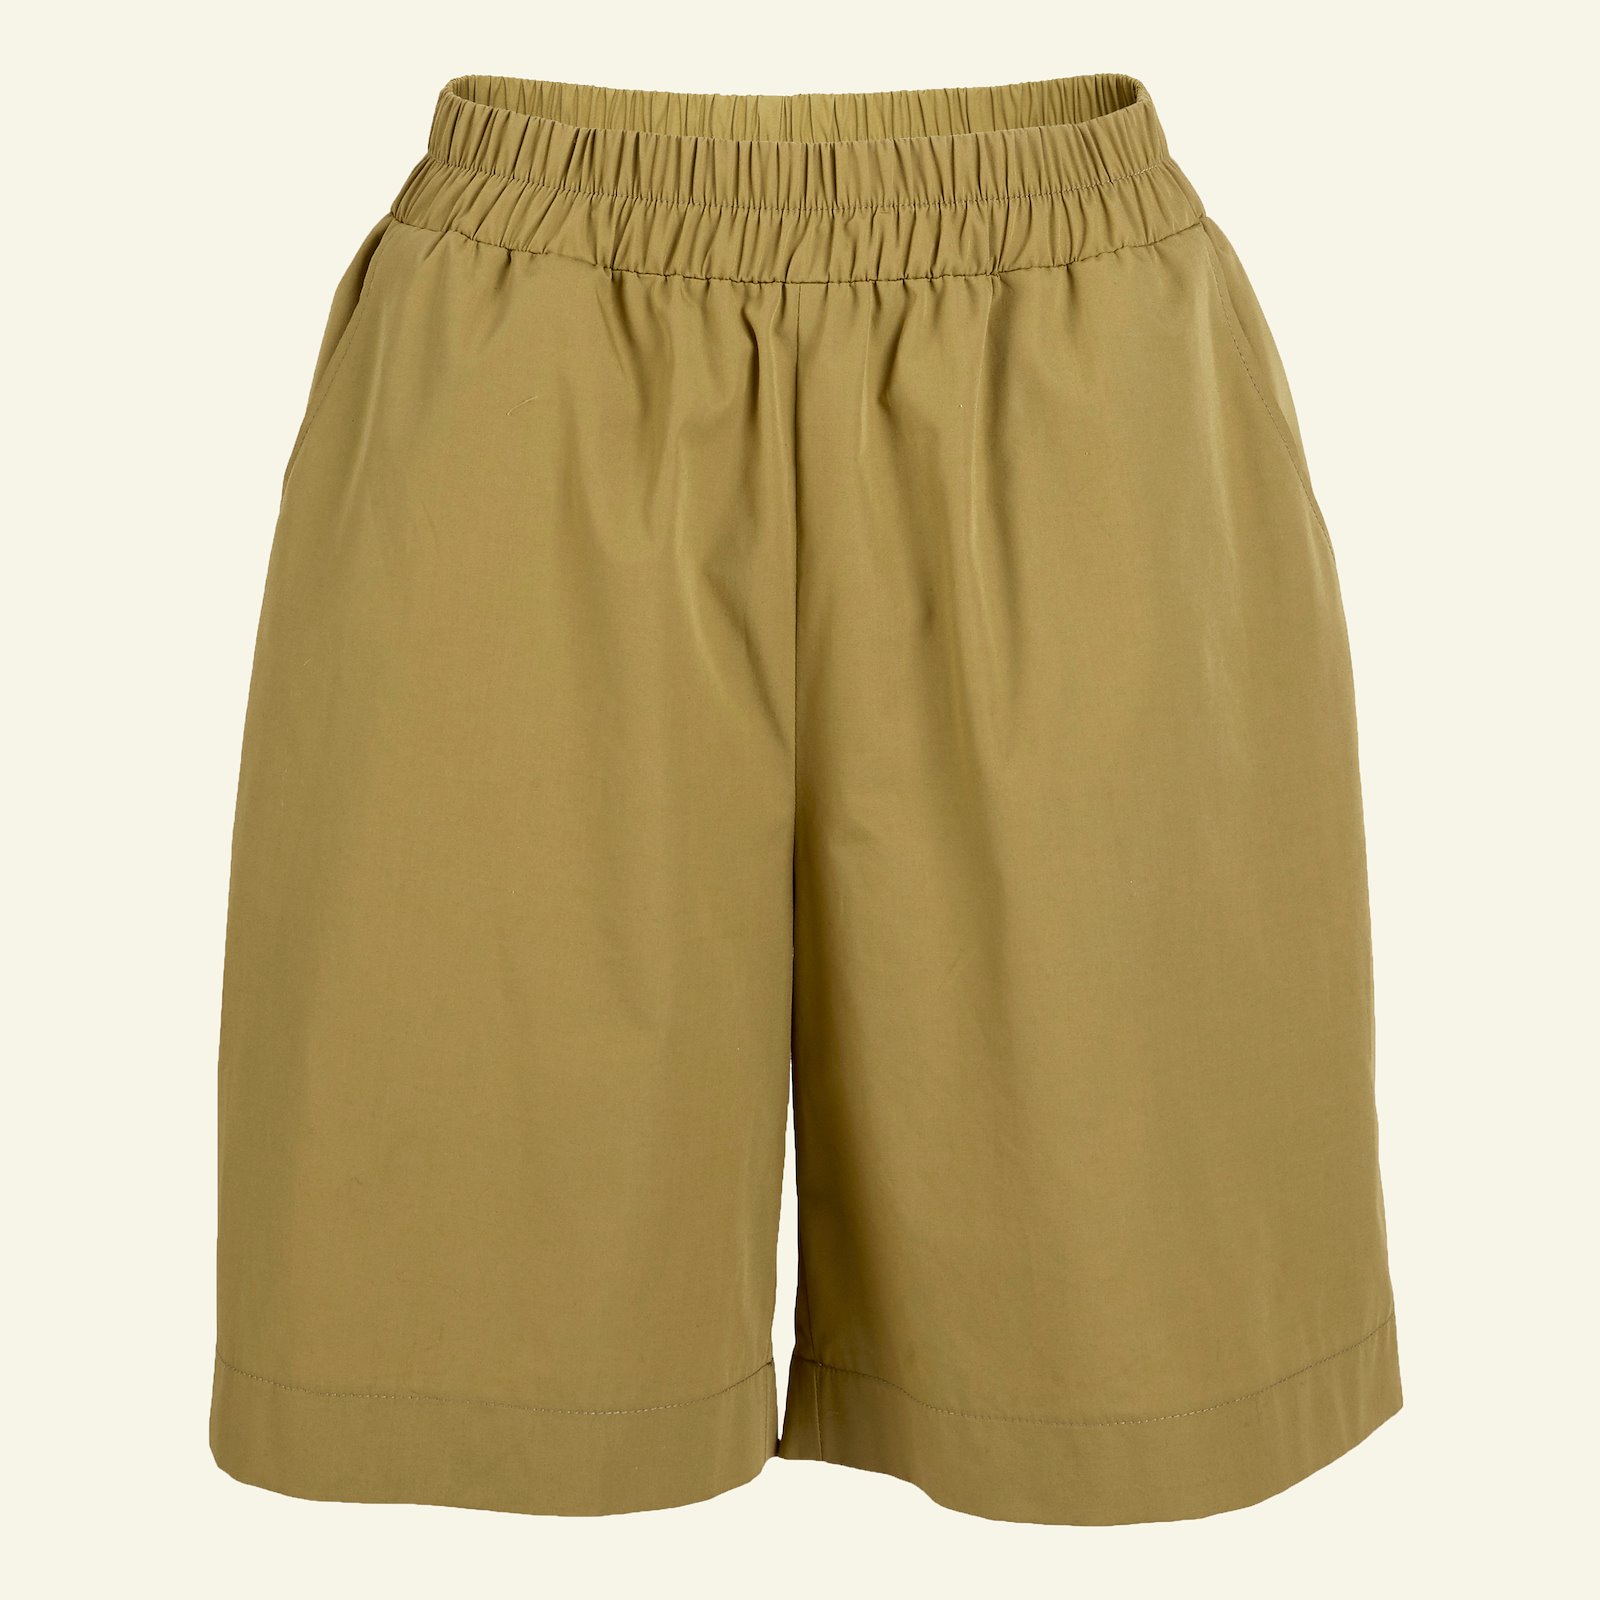 Bukse/shorts med vidde og lommer, 44 p20051_501926_sskit